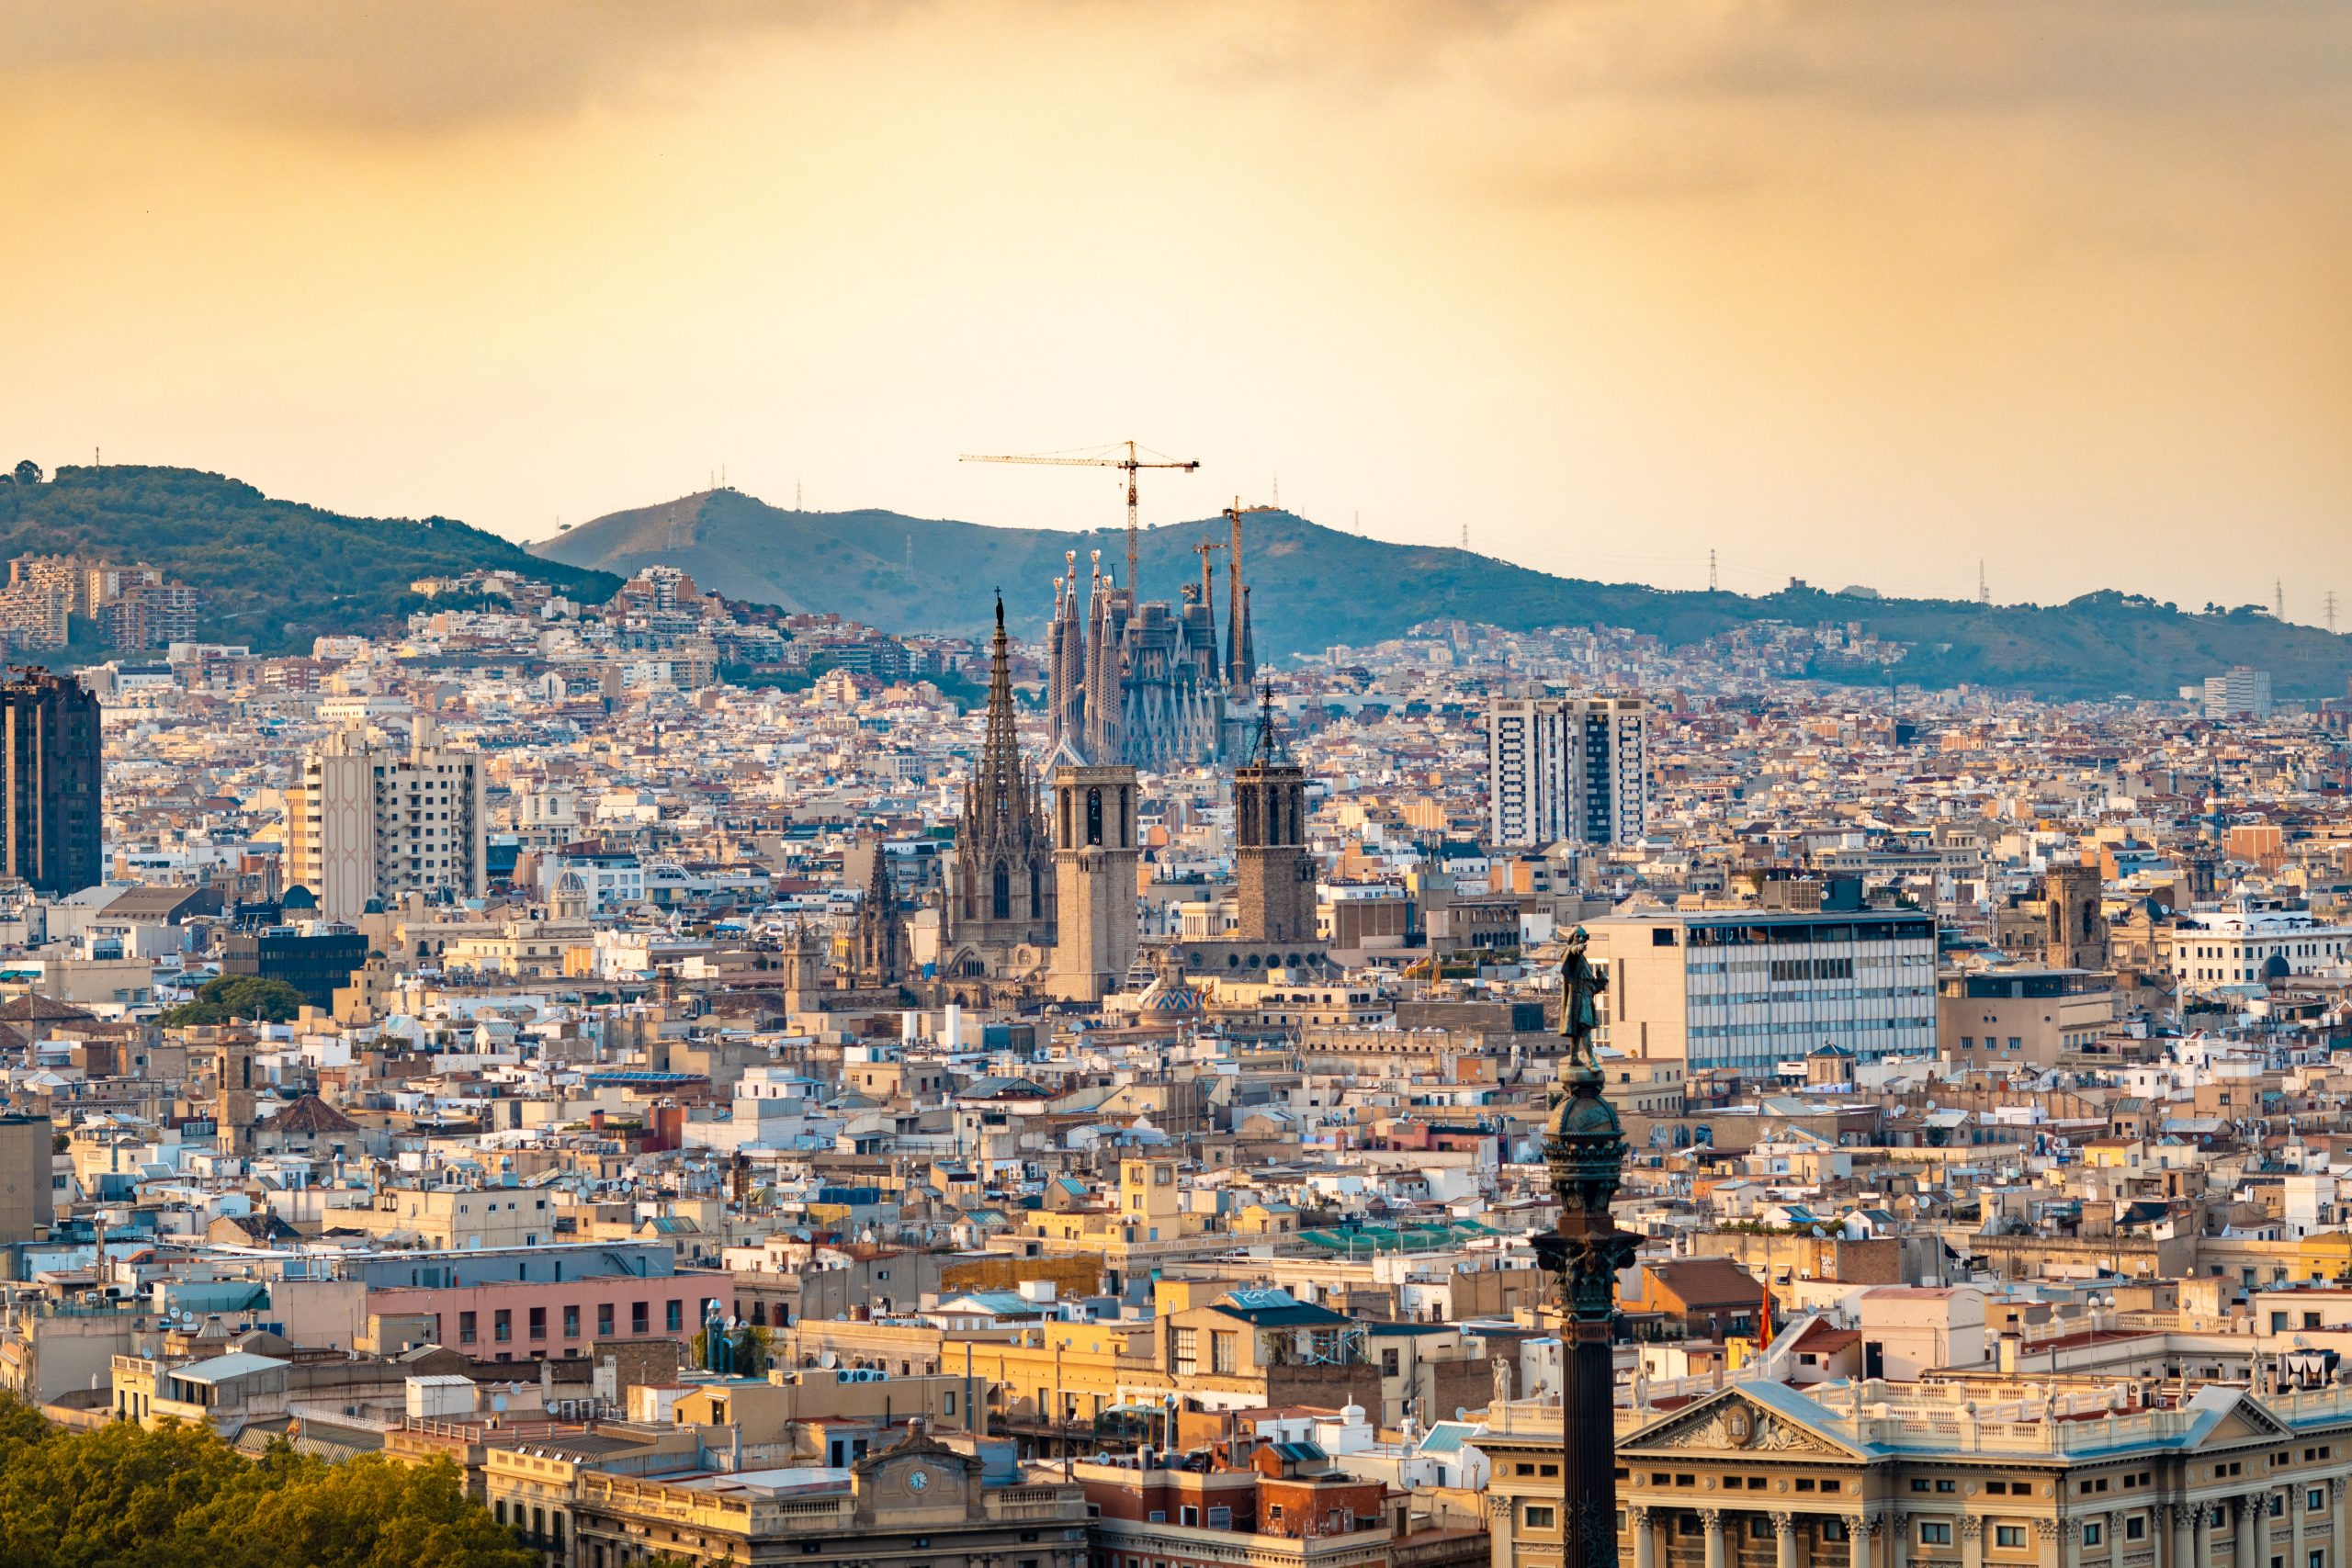 Mudarse a Barcelona – Consejos para hacer la mudanza y empezar a trabajar